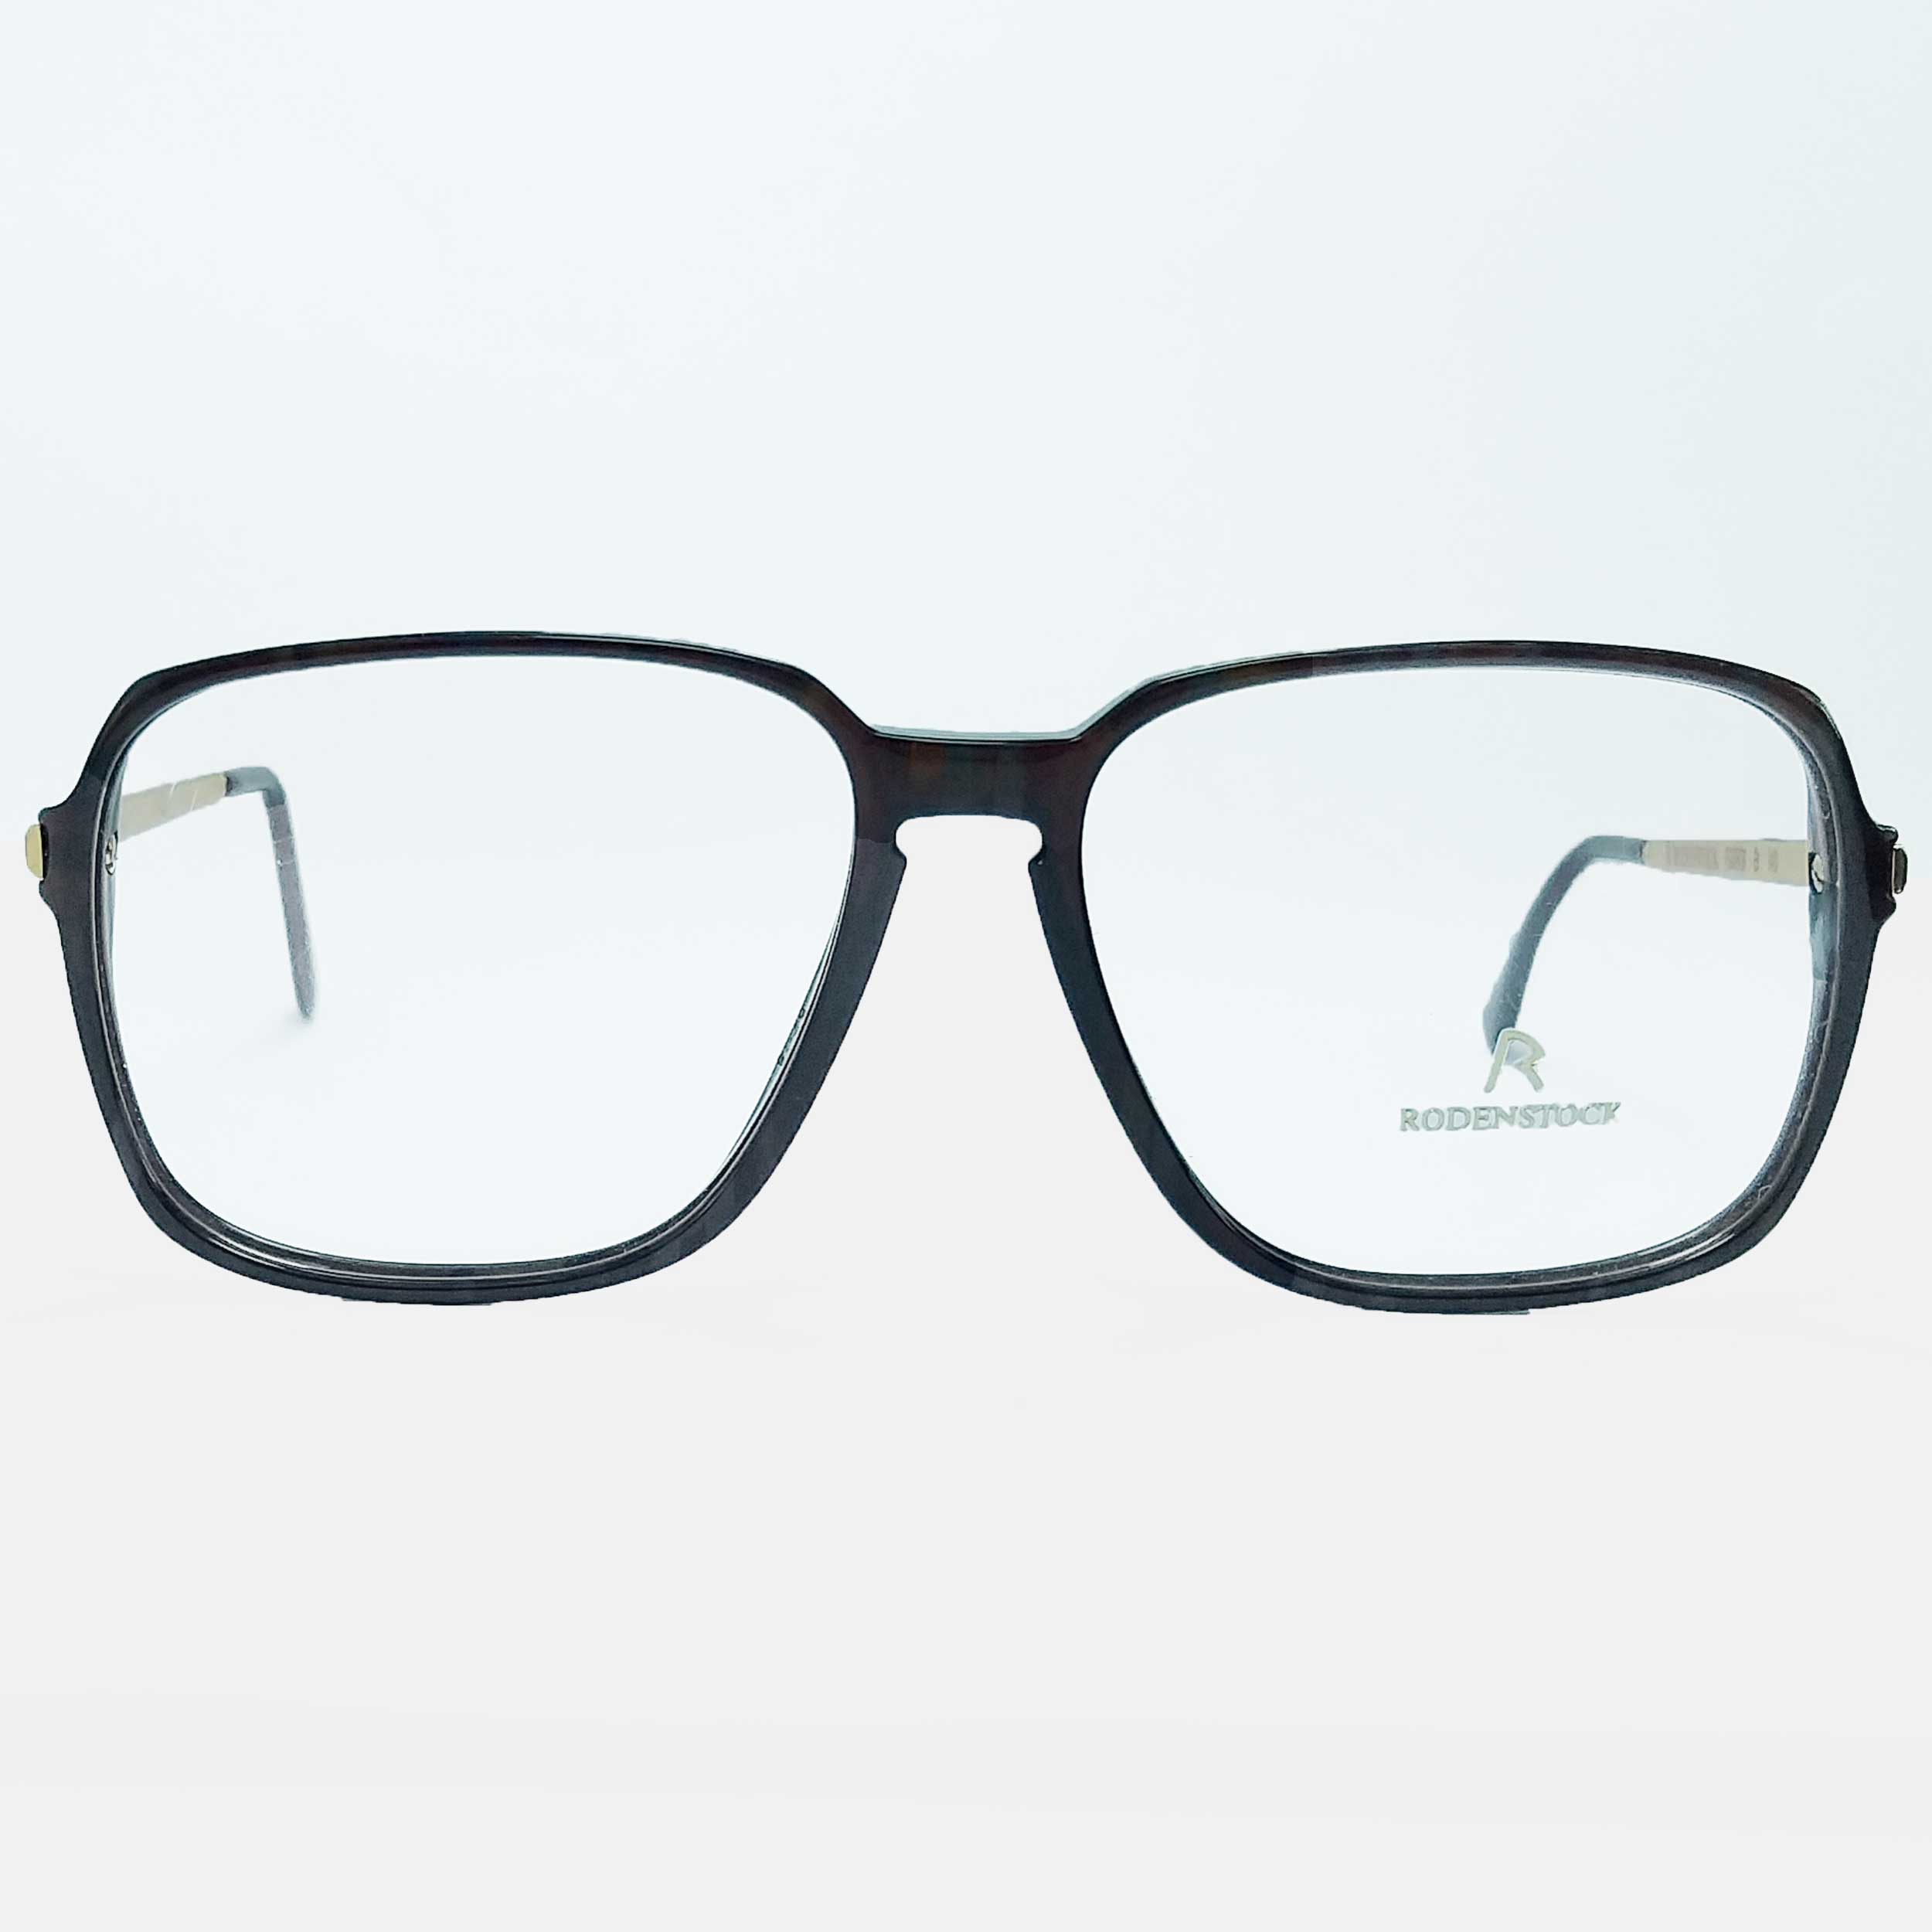 فریم عینک طبی مردانه رودن اشتوک مدل R0979 -  - 5